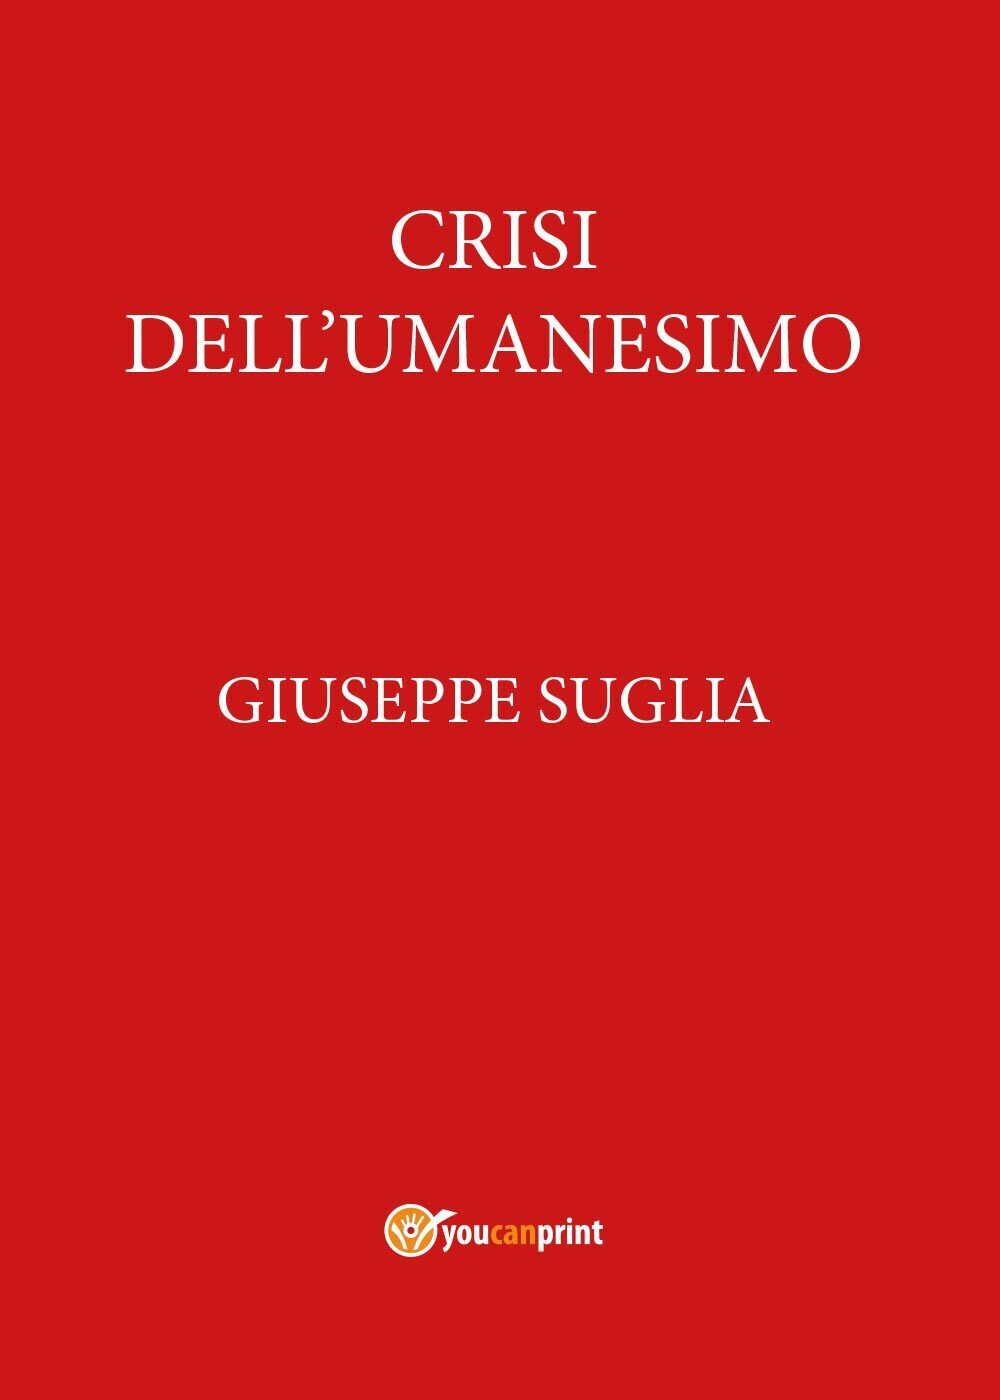 Crisi delL'umanesimo - Giuseppe Suglia,  2017,  Youcanprint libro usato